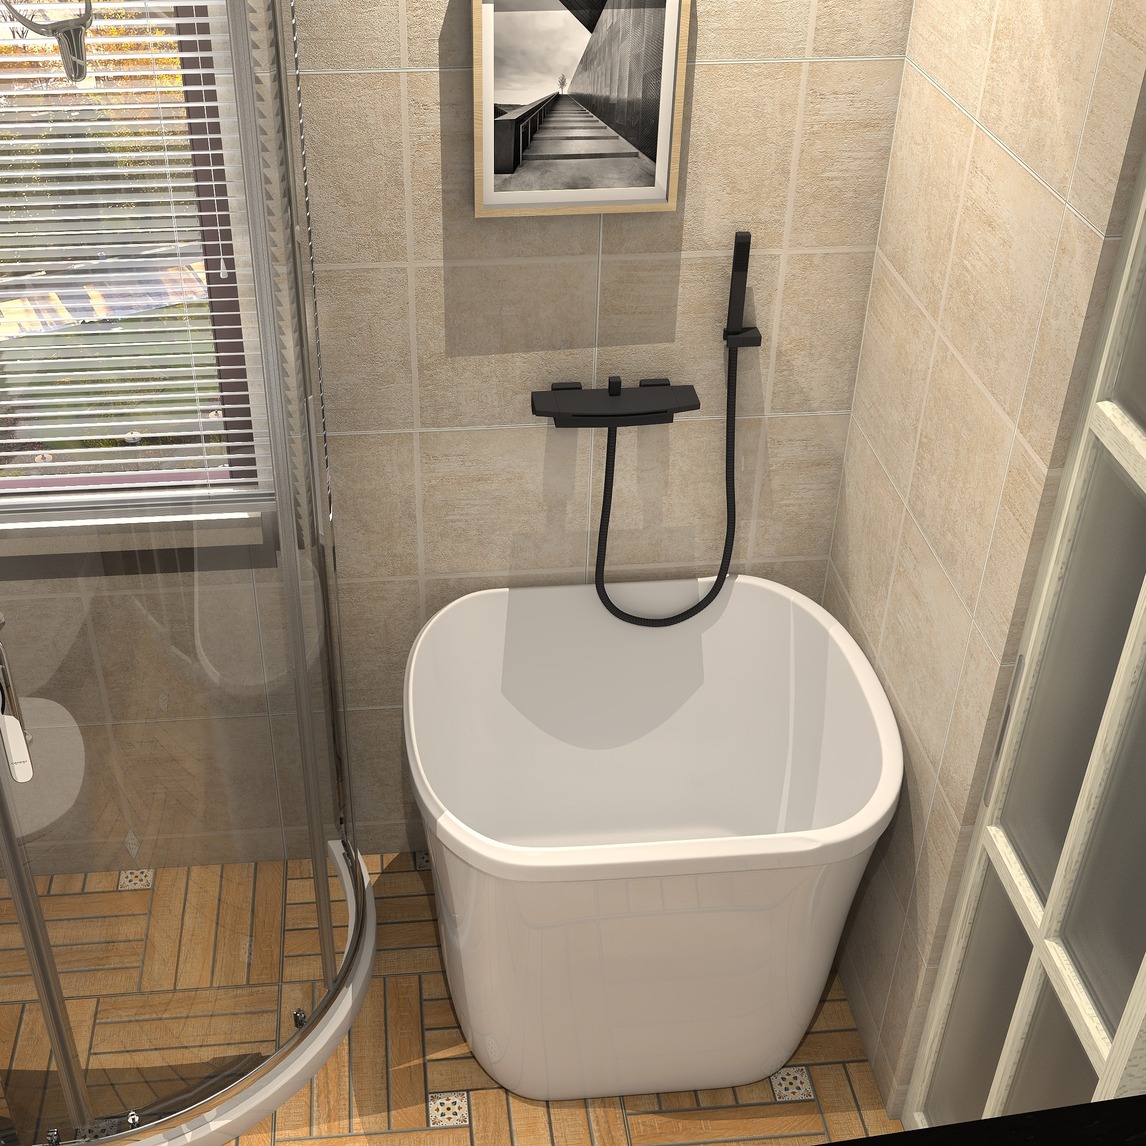 带浴缸的卫生间装修效果图,带浴缸的卫生间装修效果图案例_2021装修效果图-齐家网装修图片频道